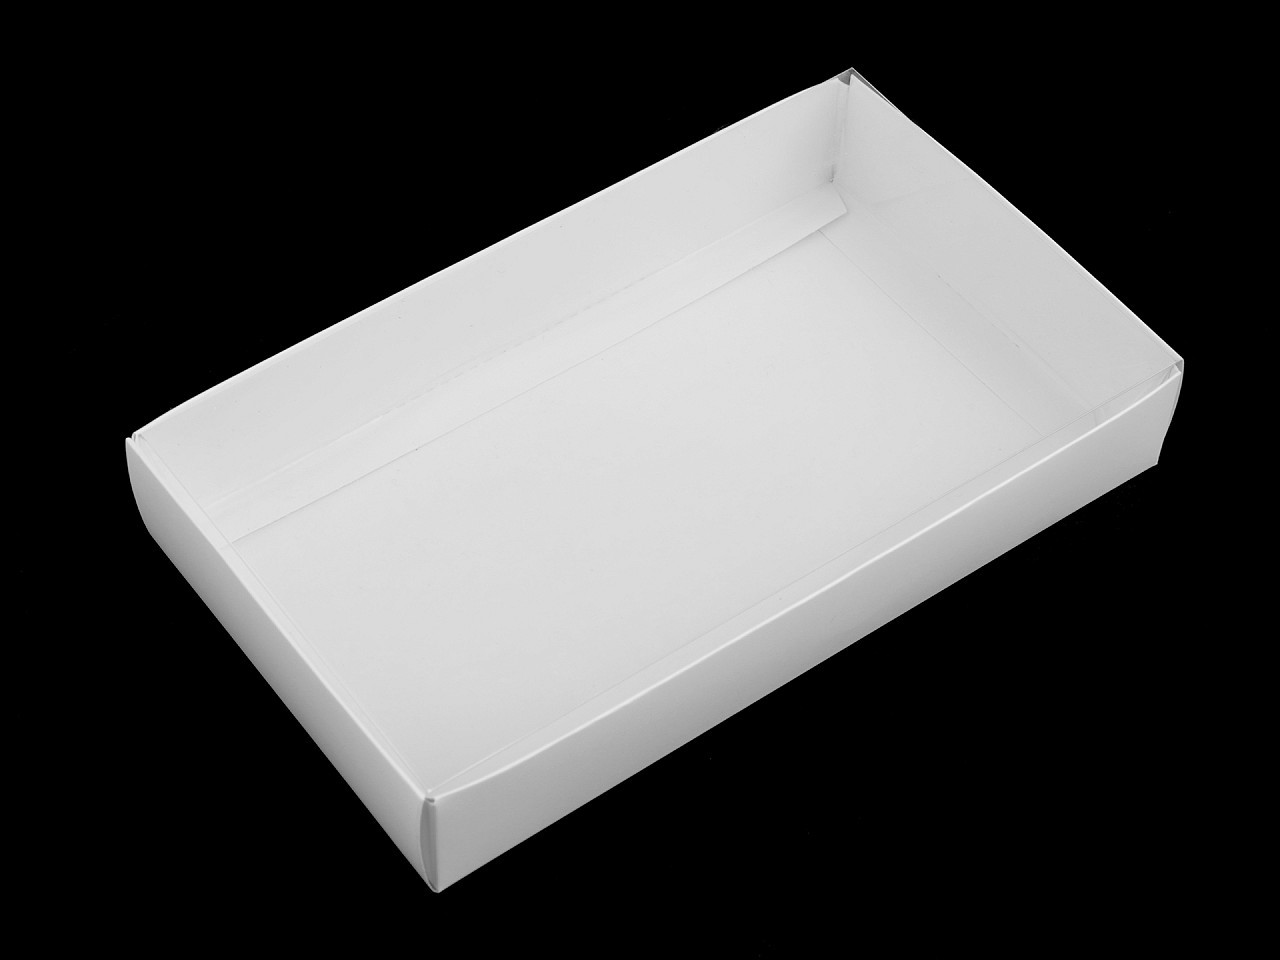 Papírová krabice s průhledným víkem, barva 1 bílá